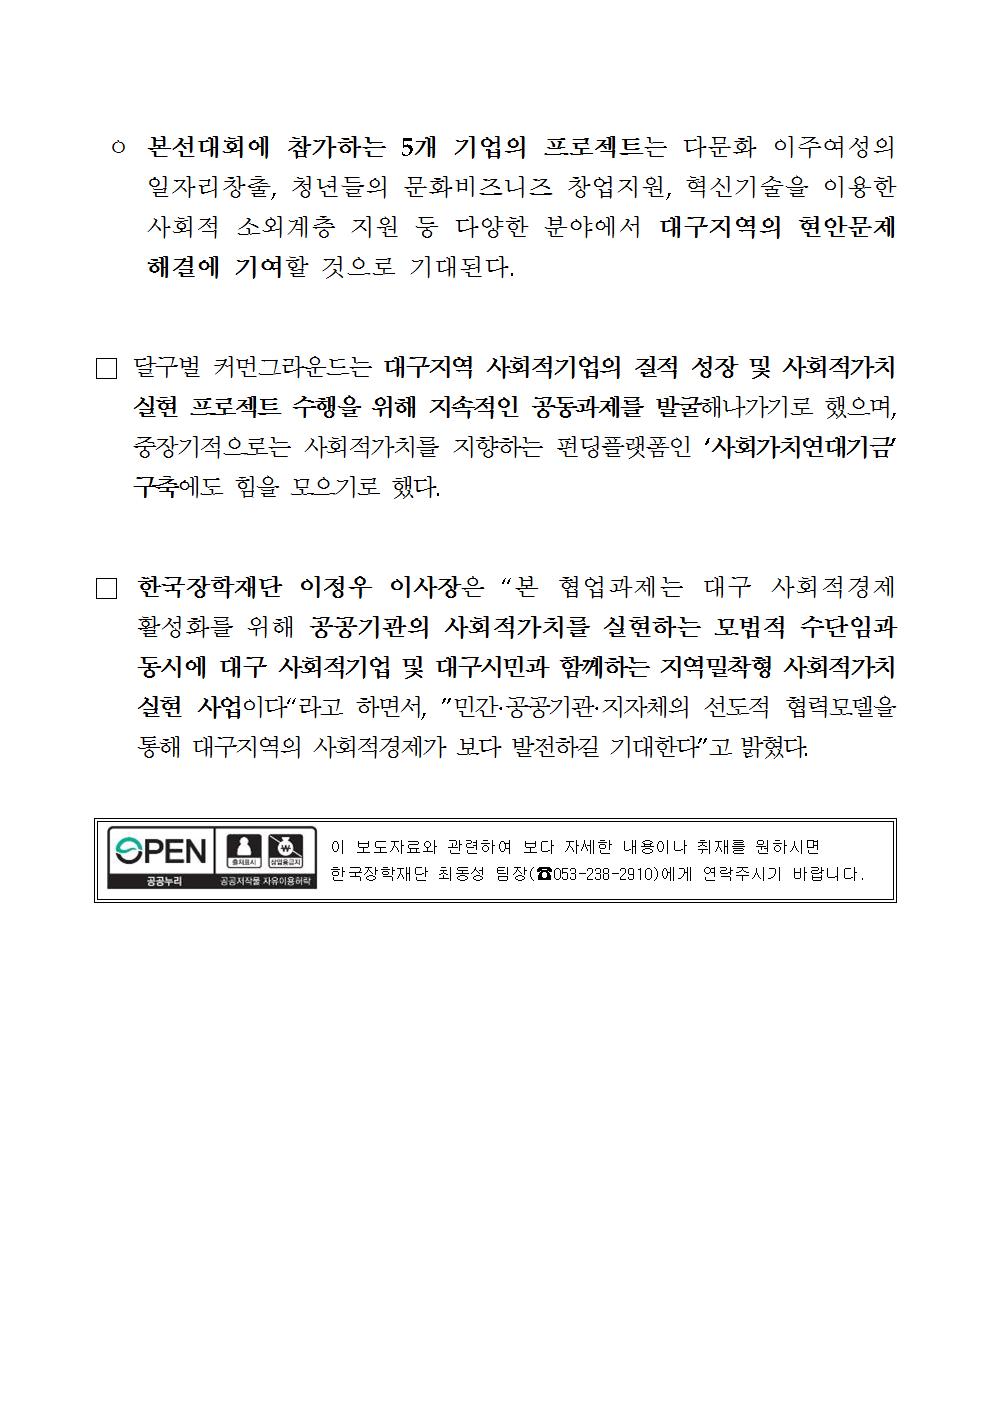 12-18(화)[보도자료] 한국장학재단, 사회적가치 실현 프로젝트 '소셜크라우드펀딩대회' 개최002.jpg